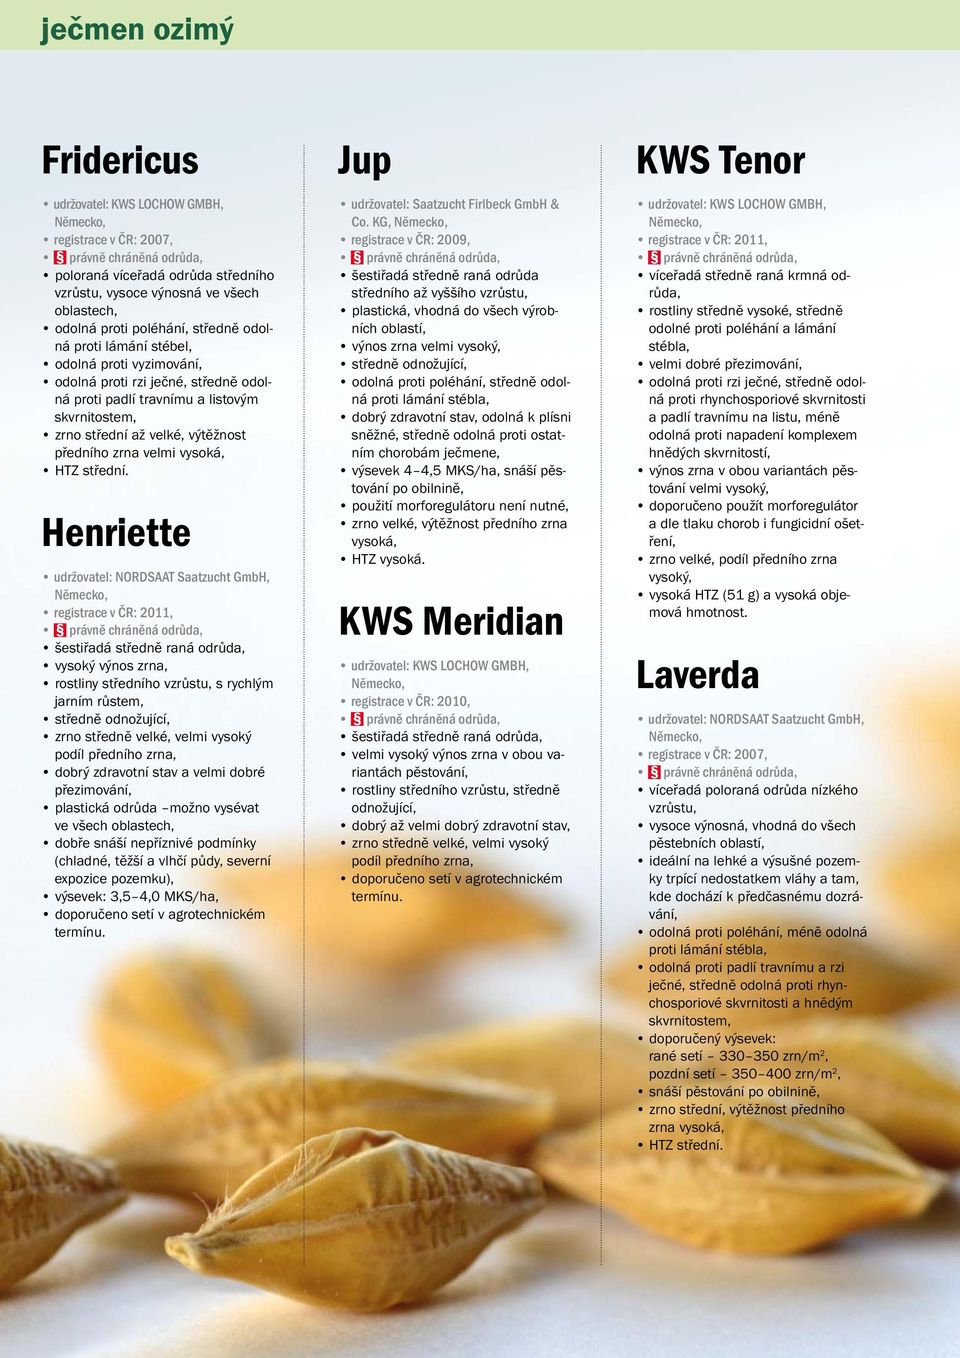 Henriette udržovatel: NORDSAAT Saatzucht GmbH, registrace v ČR: 2011, šestiřadá středně raná odrůda, vysoký výnos zrna, rostliny středního vzrůstu, s rychlým jarním růstem, středně odnožující, zrno